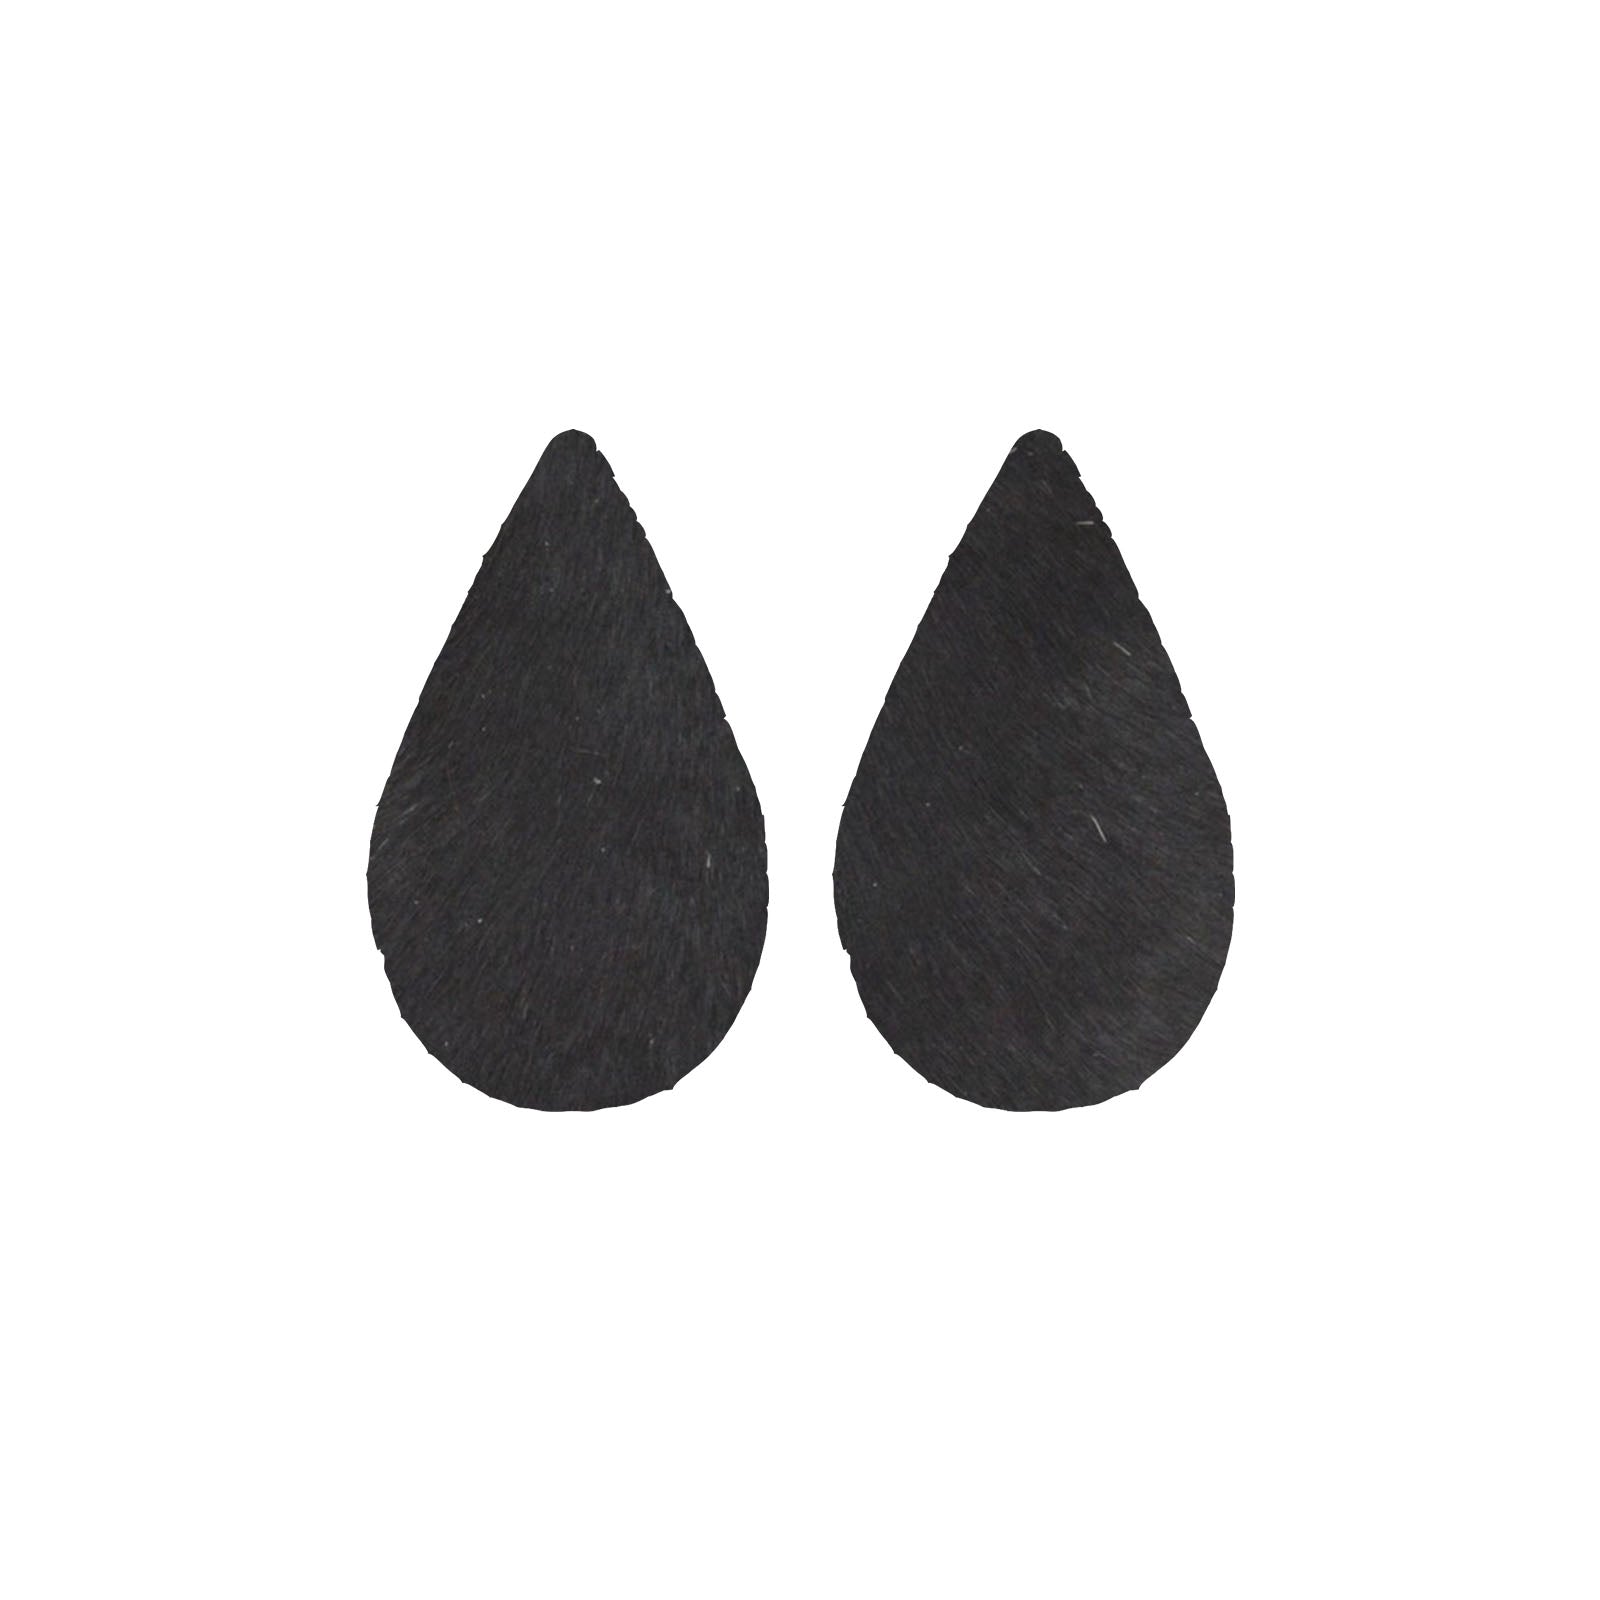 Solid Black Hair On Die Cut Earrings, Large Teardrop | The Leather Guy